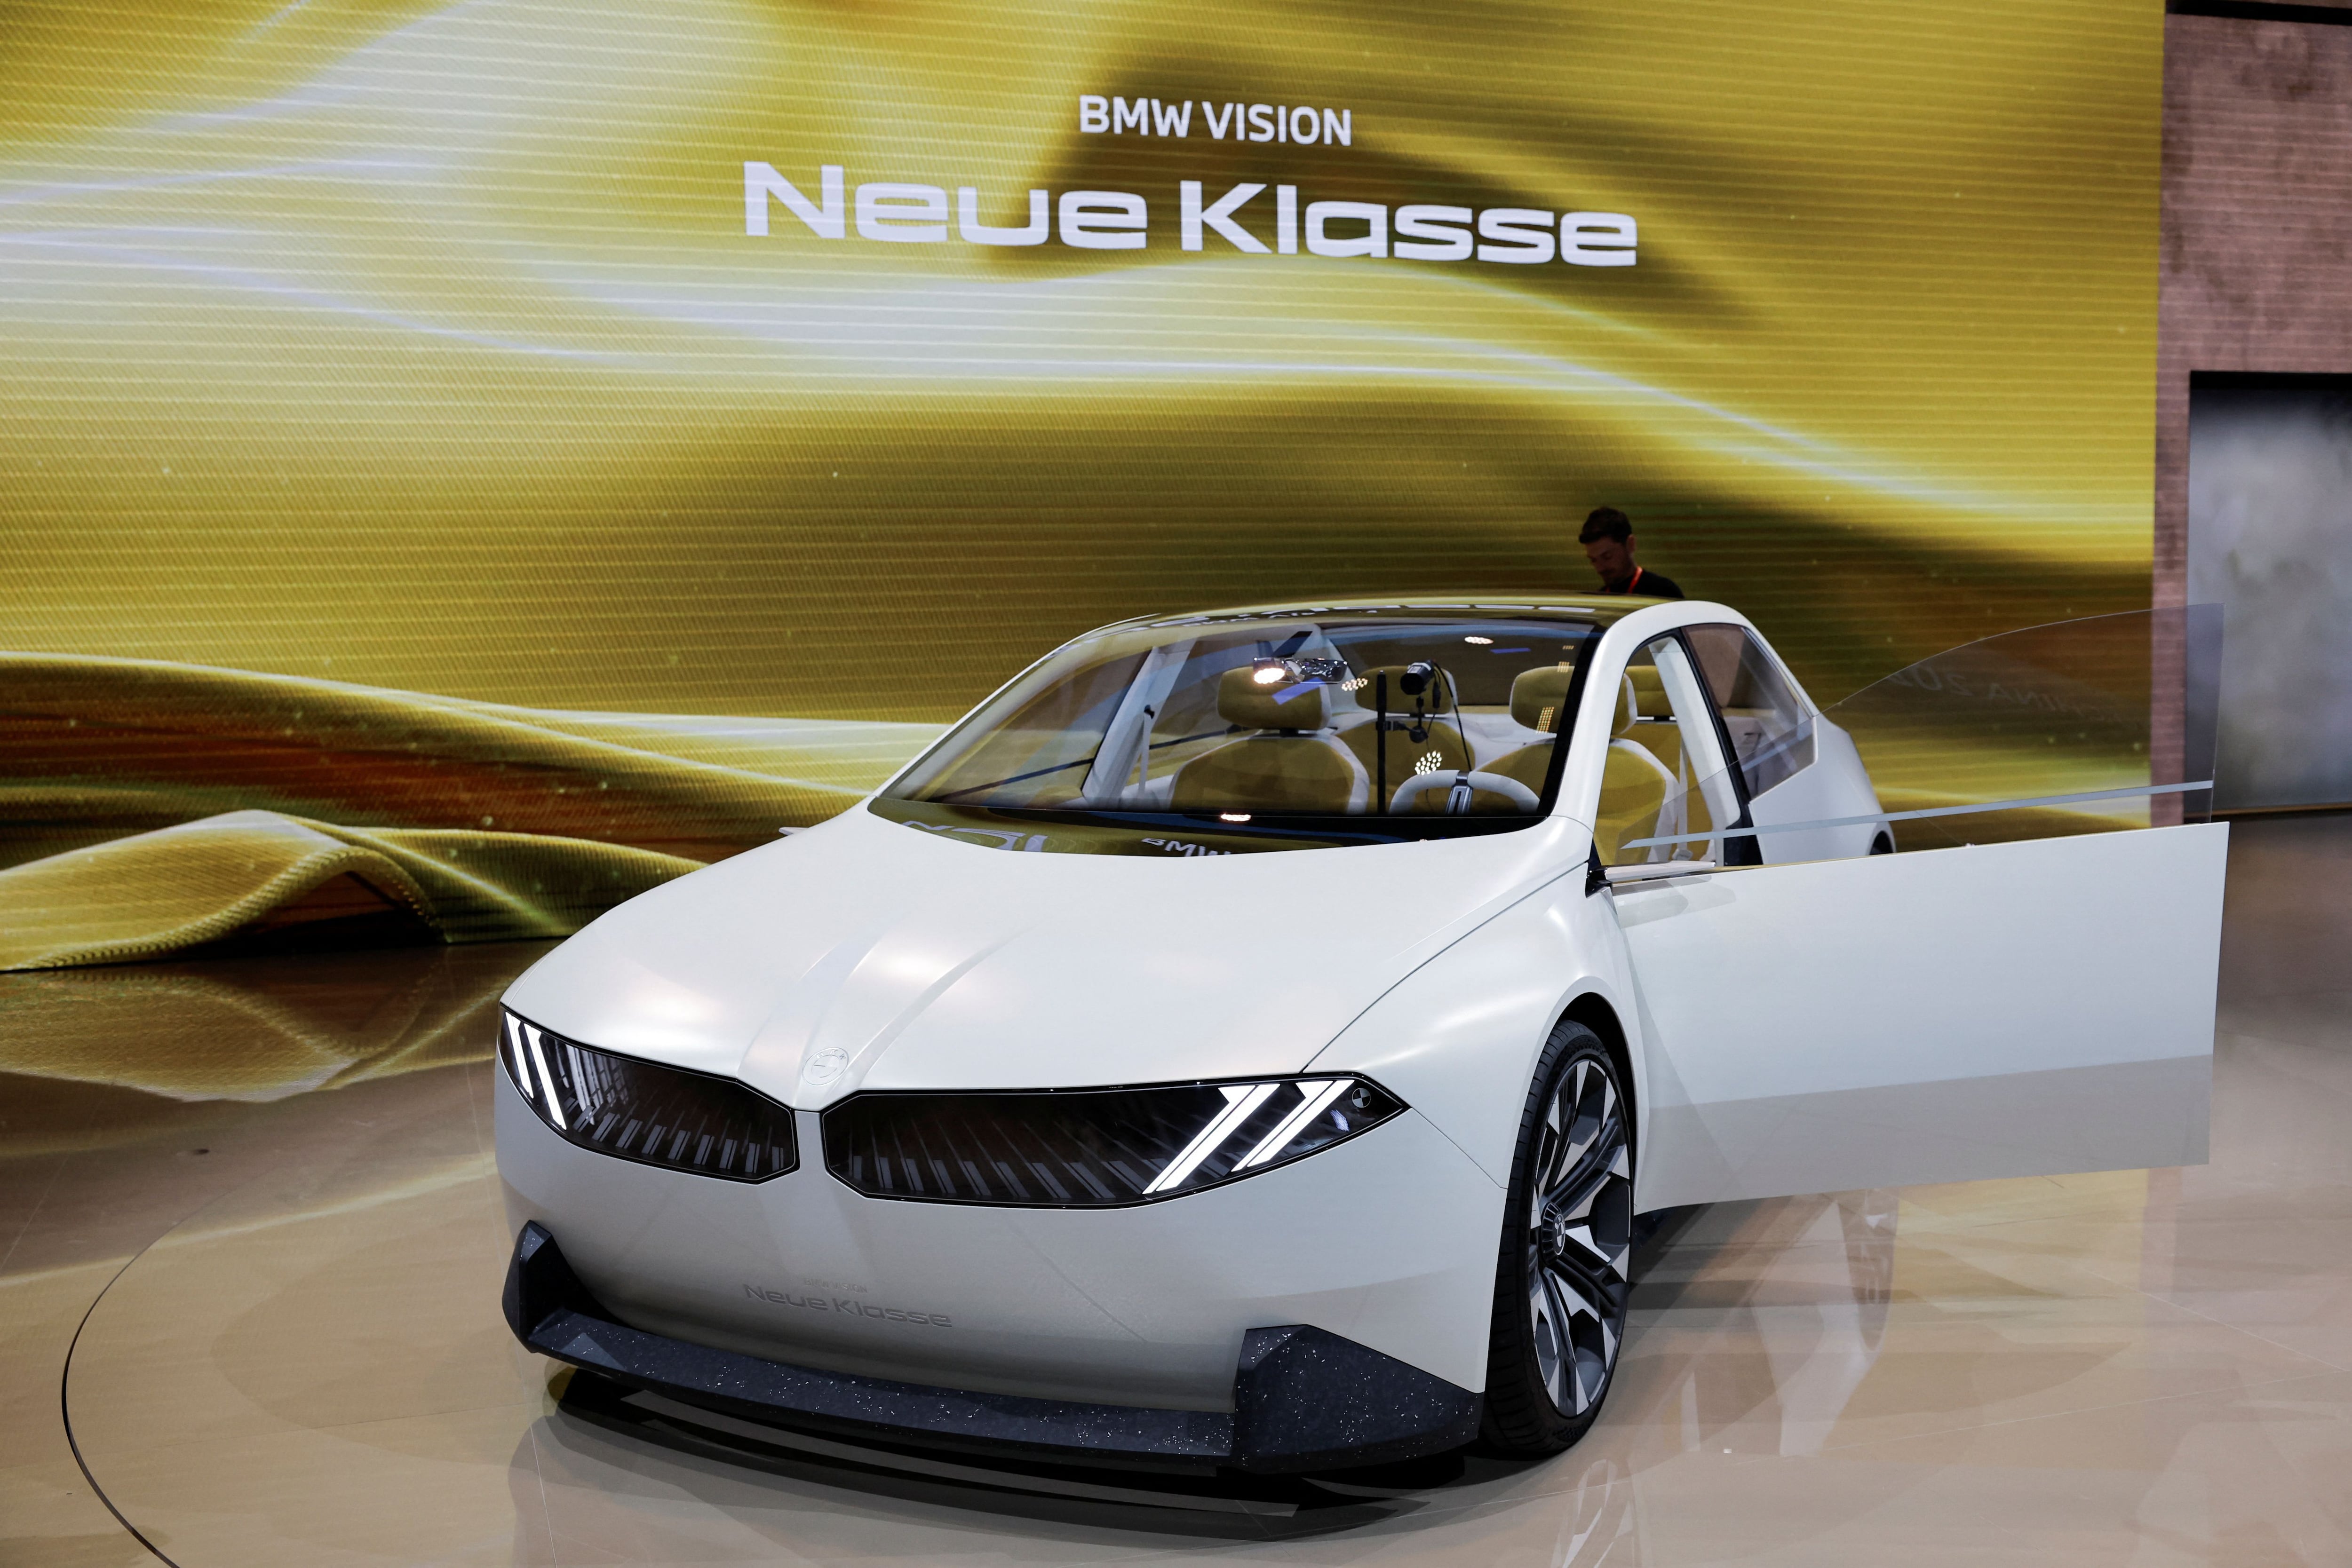 El vehículo eléctrico BMW Vision Neue Klasse es la apuesta de la empresa para competir en vehículos con estas características. (Foto: REUTERS/Tingshu Wang)